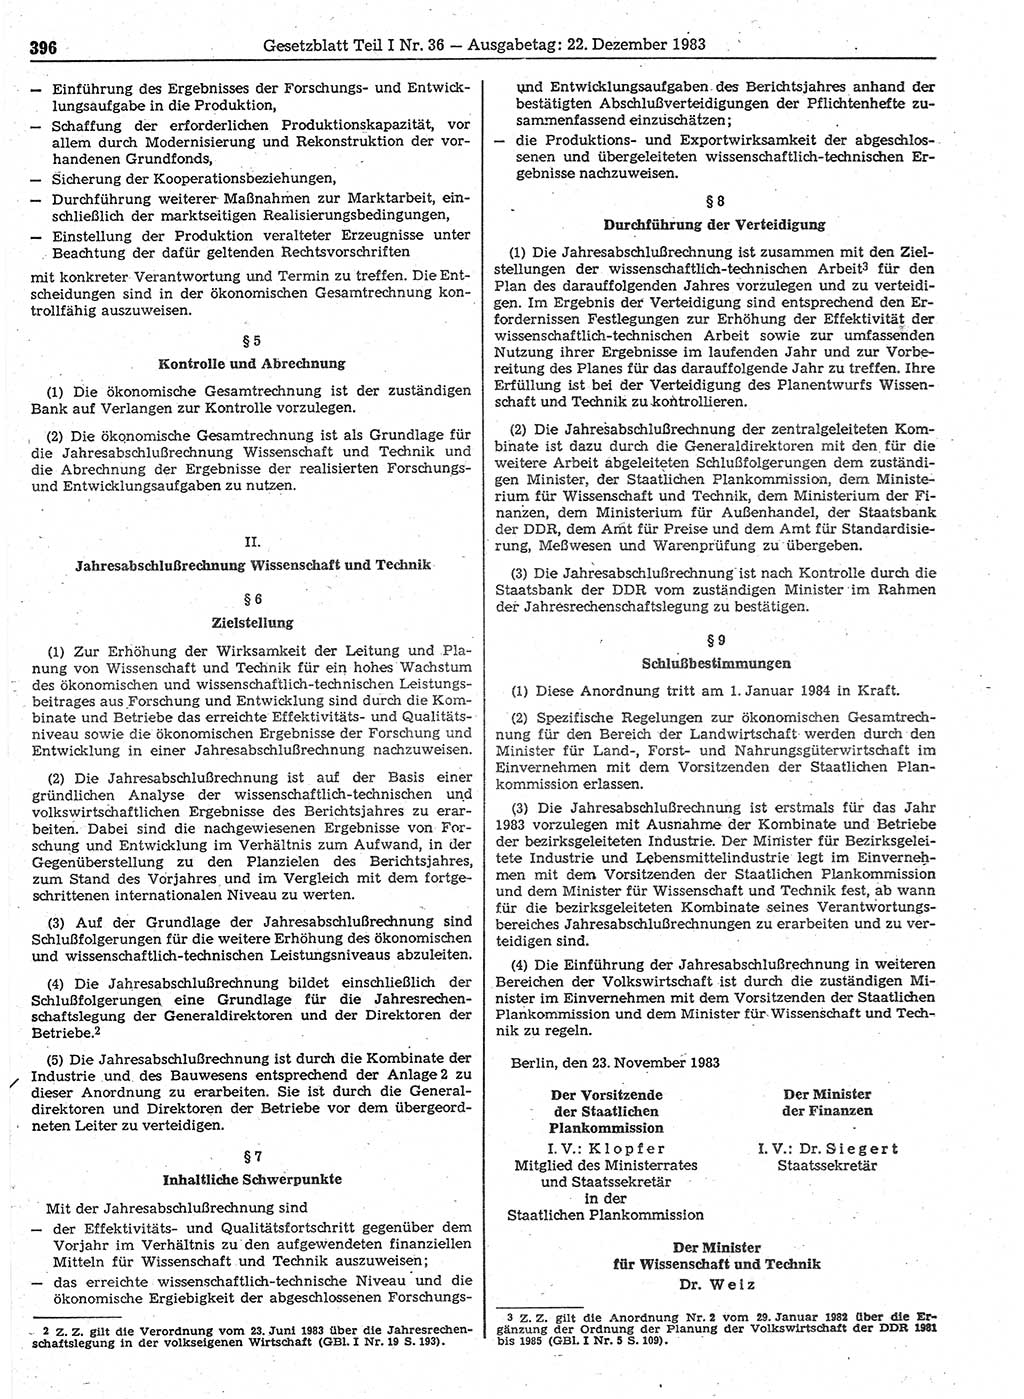 Gesetzblatt (GBl.) der Deutschen Demokratischen Republik (DDR) Teil Ⅰ 1983, Seite 396 (GBl. DDR Ⅰ 1983, S. 396)